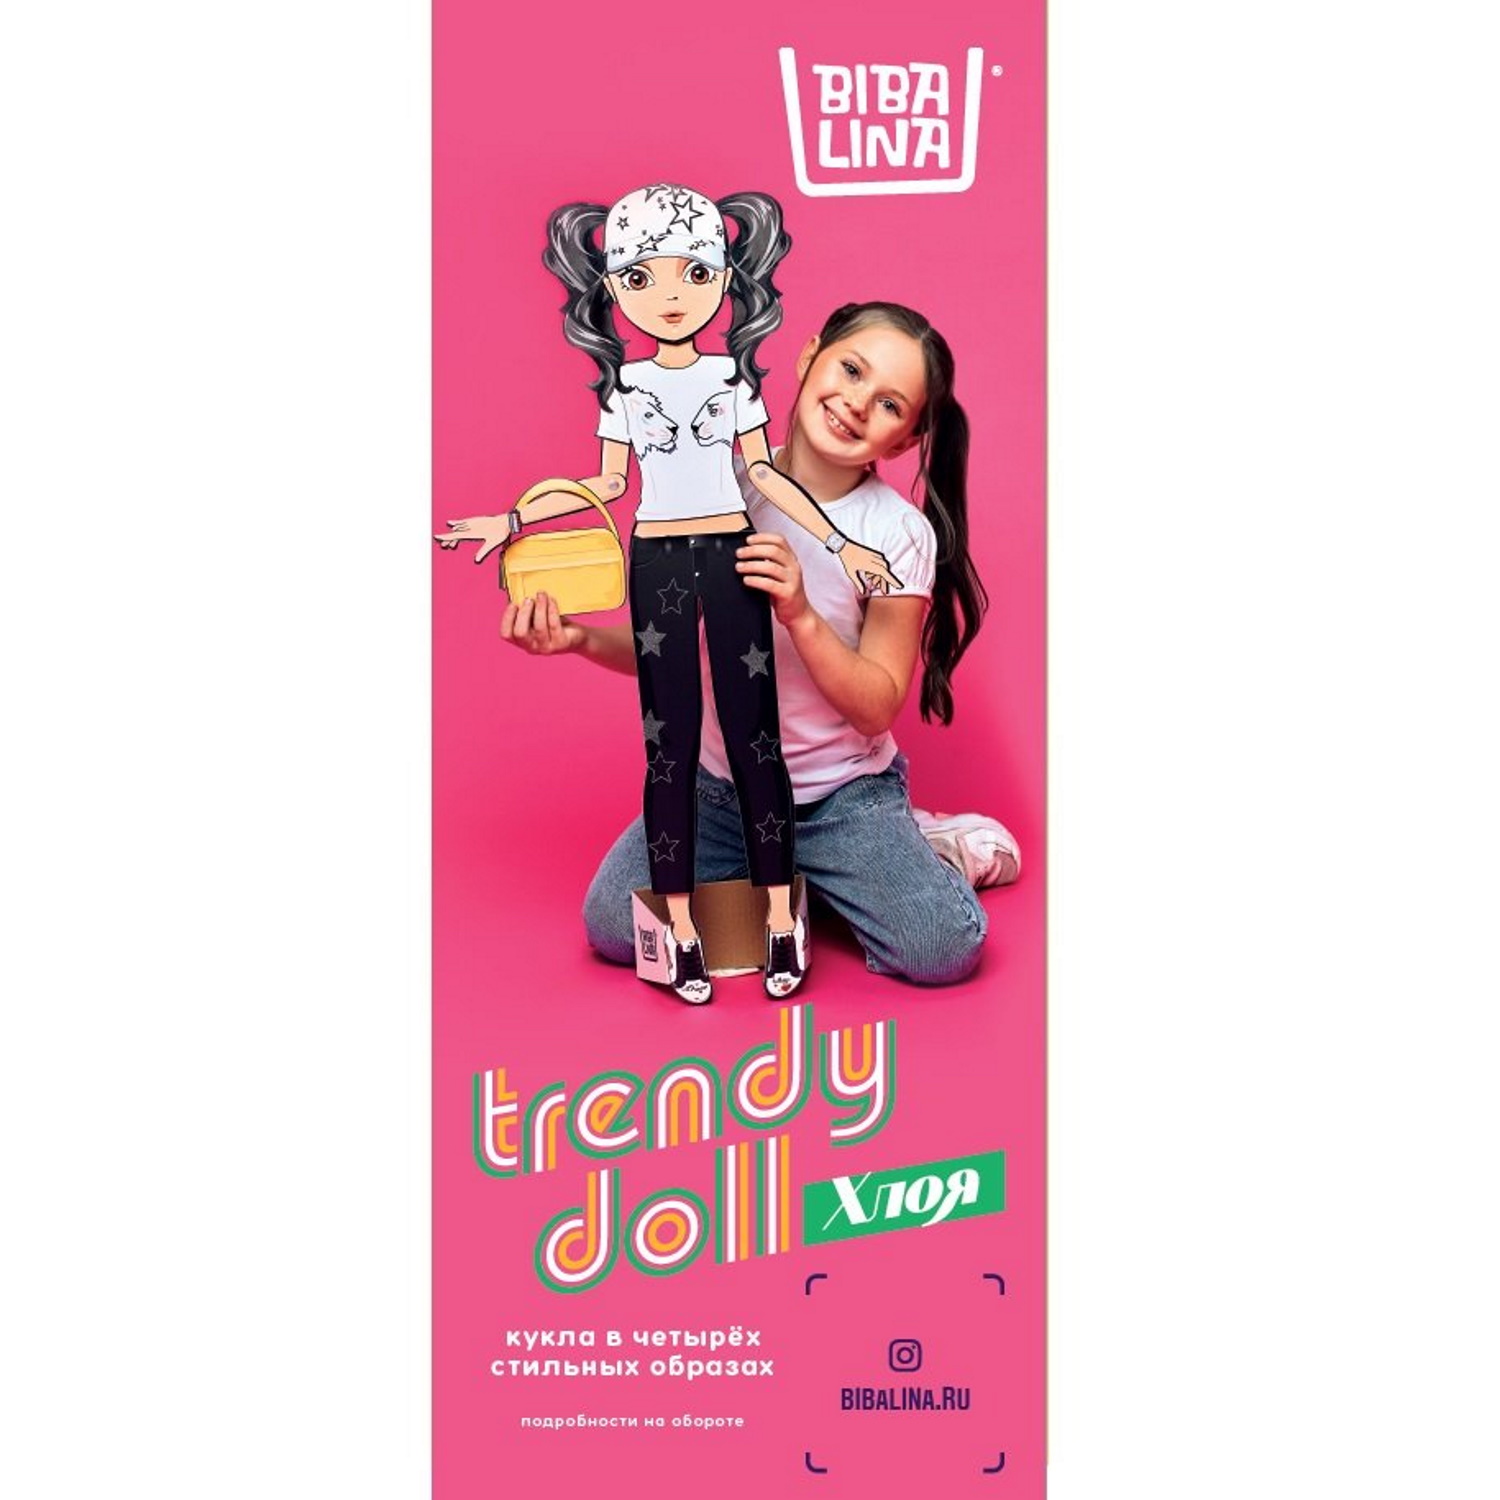 Кукла Bibalina с одеждой из картона Trendy doll Хлоя ИНП-102 - фото 10